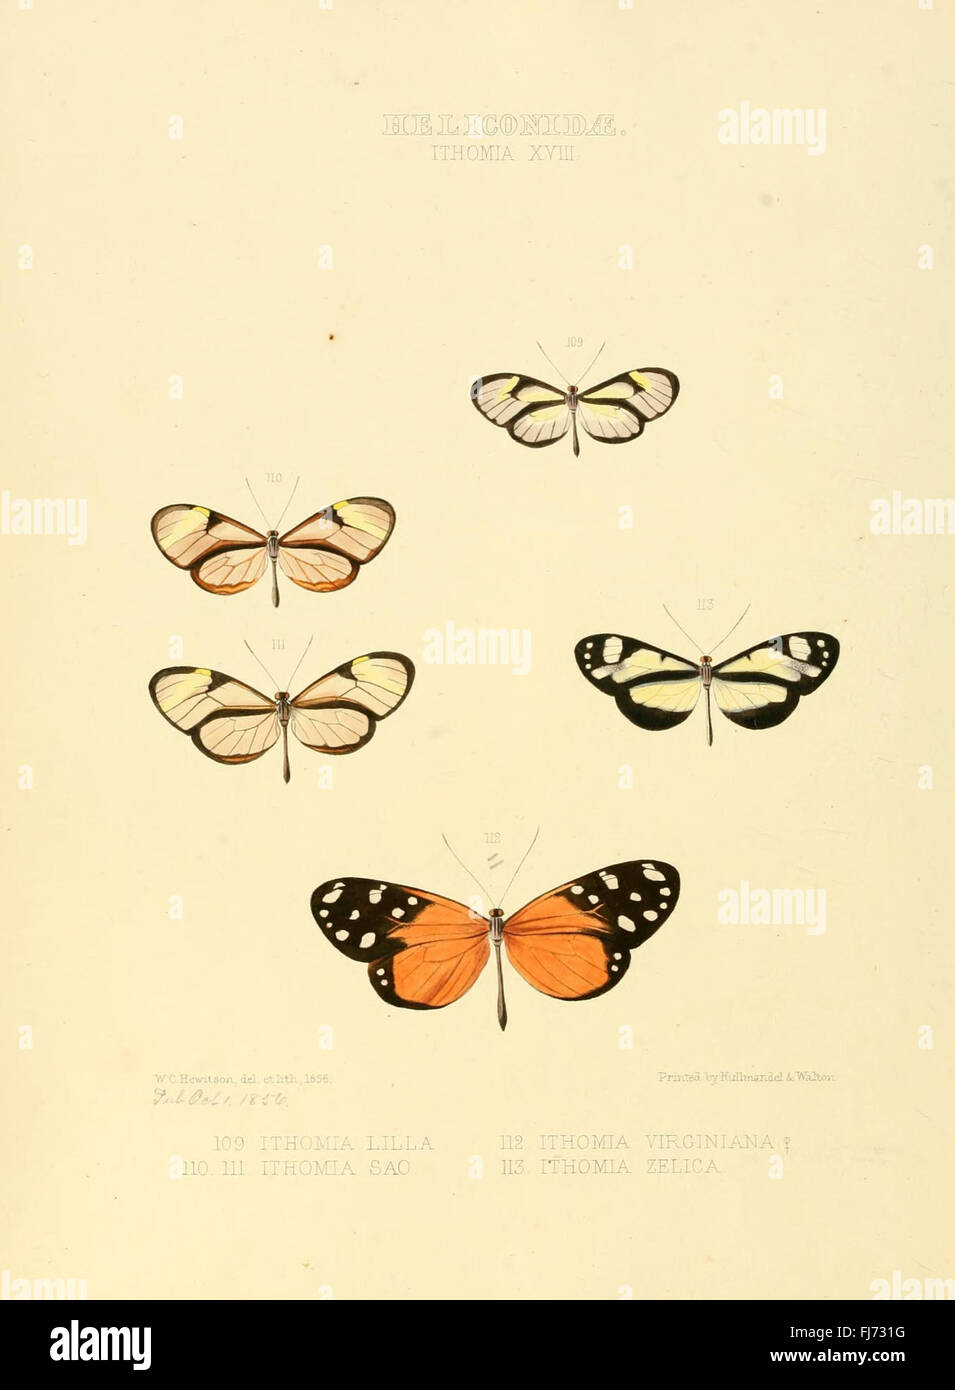 Illustrazioni di nuove specie di farfalle esotiche (Heliconidae- Ithomia XVIII) Foto Stock